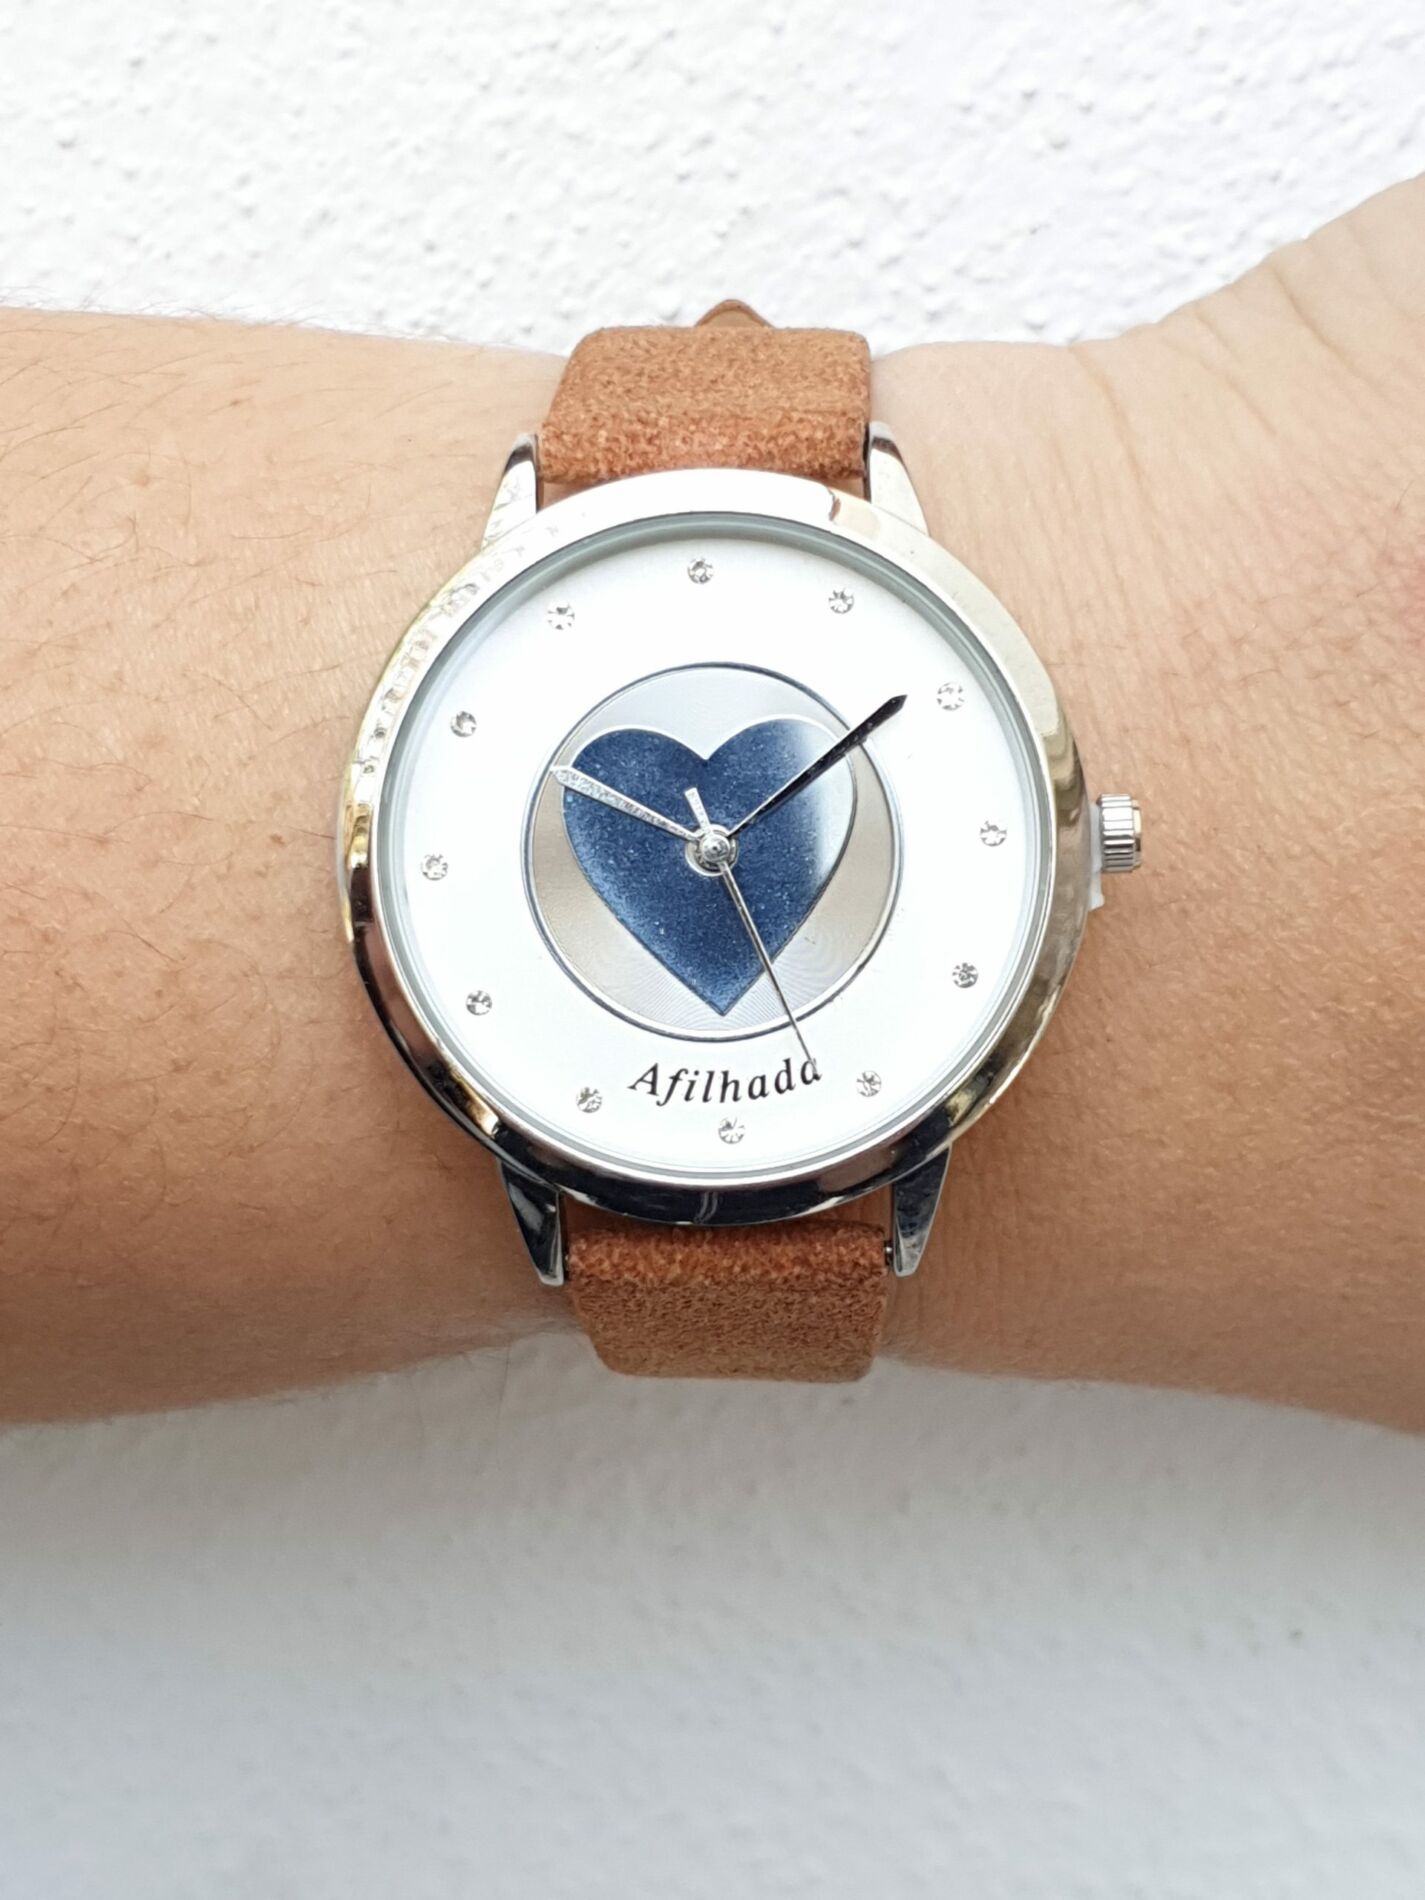 Relógio Afilhada Prateado + Oferta de uma pulseira